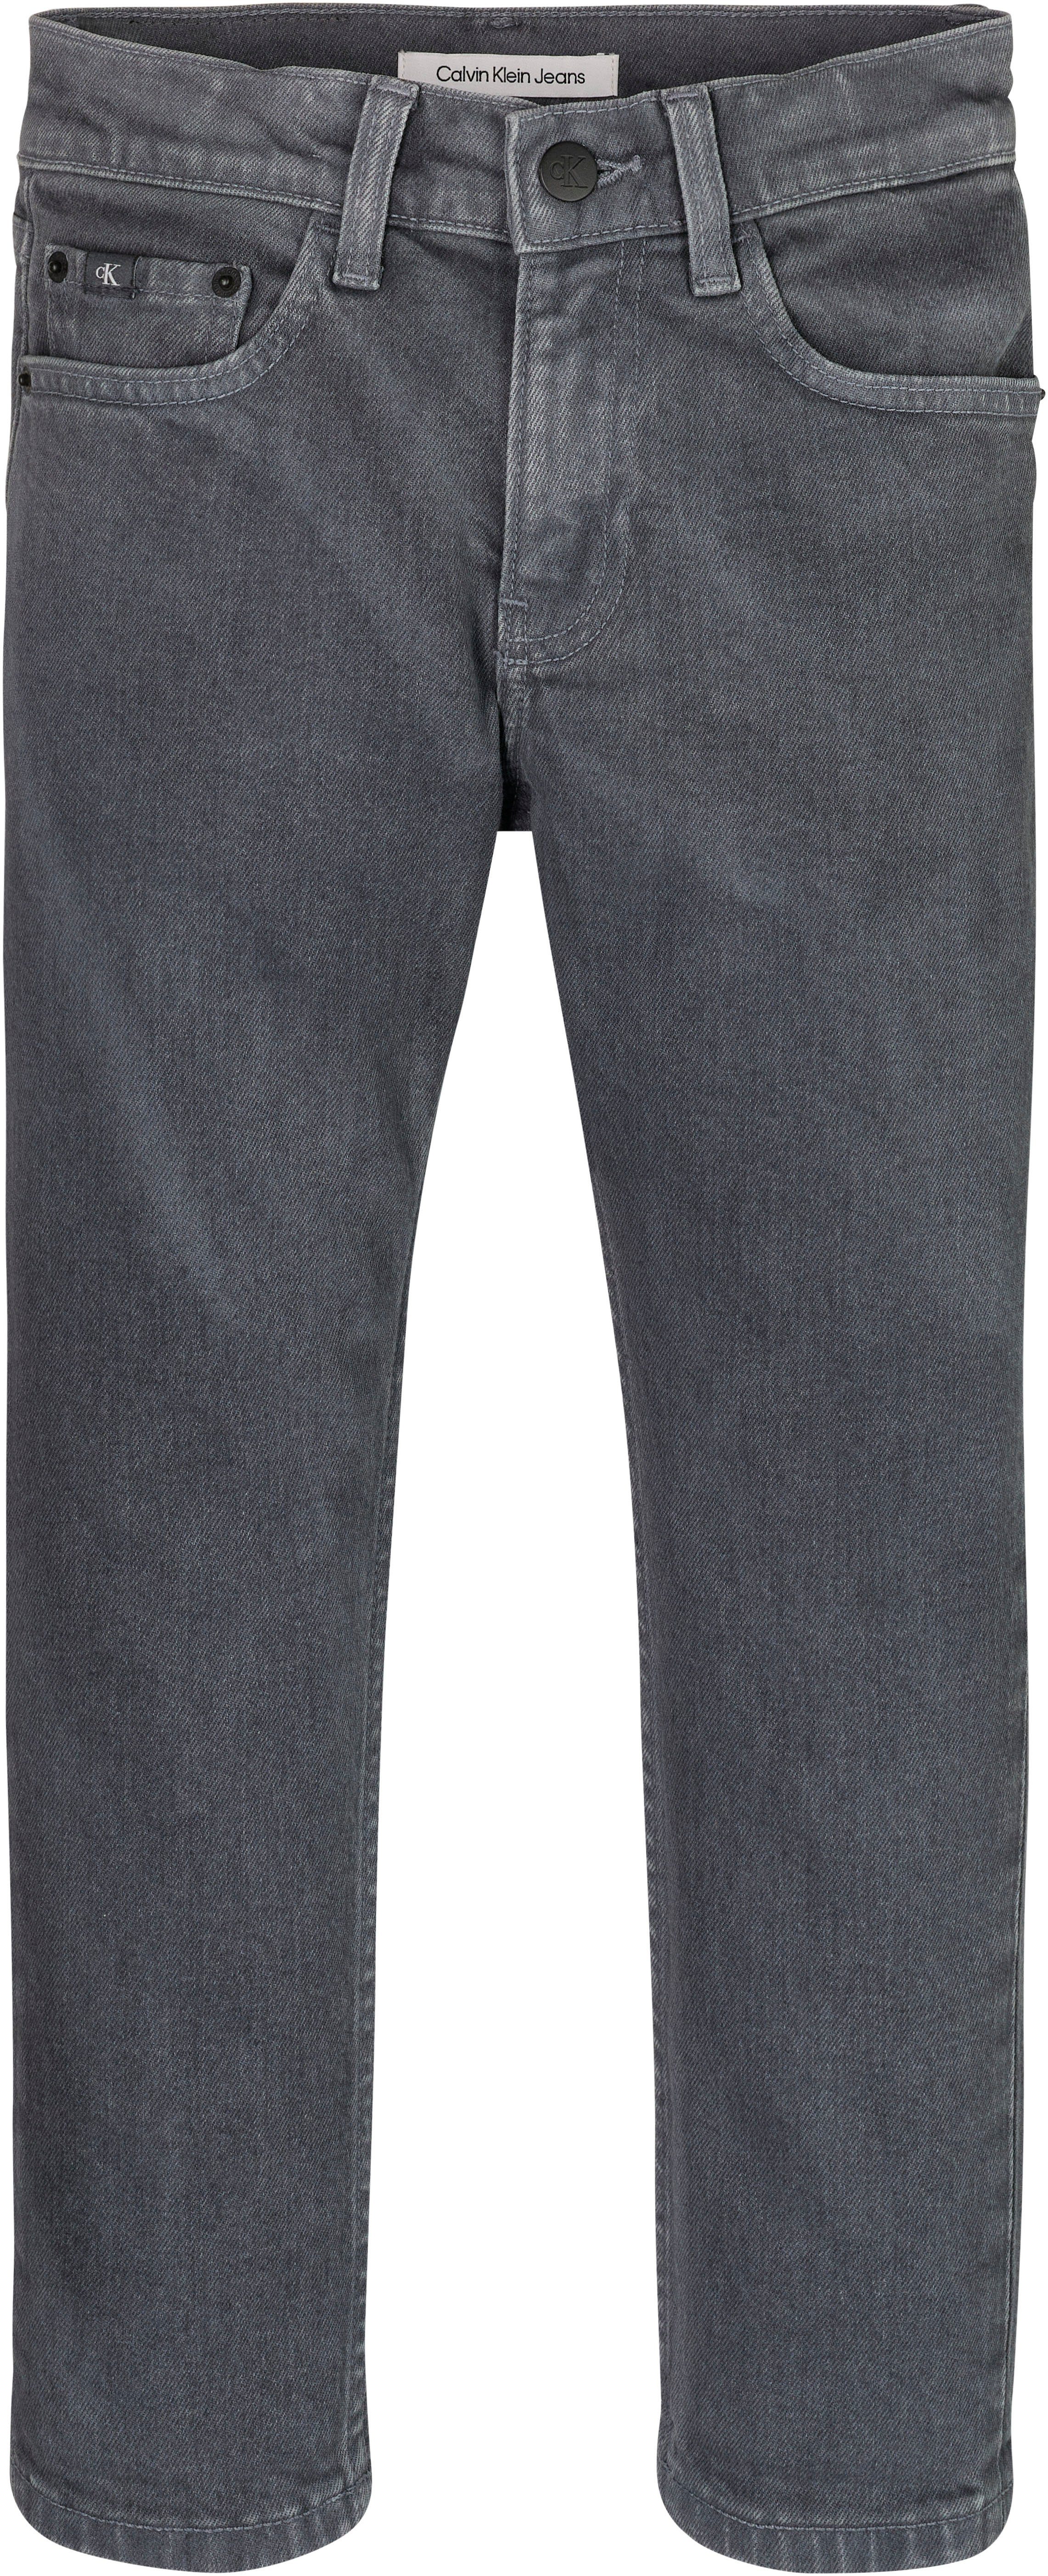 Klein Jeans GREY DARK Calvin DAD Stretch-Jeans OVERDYED